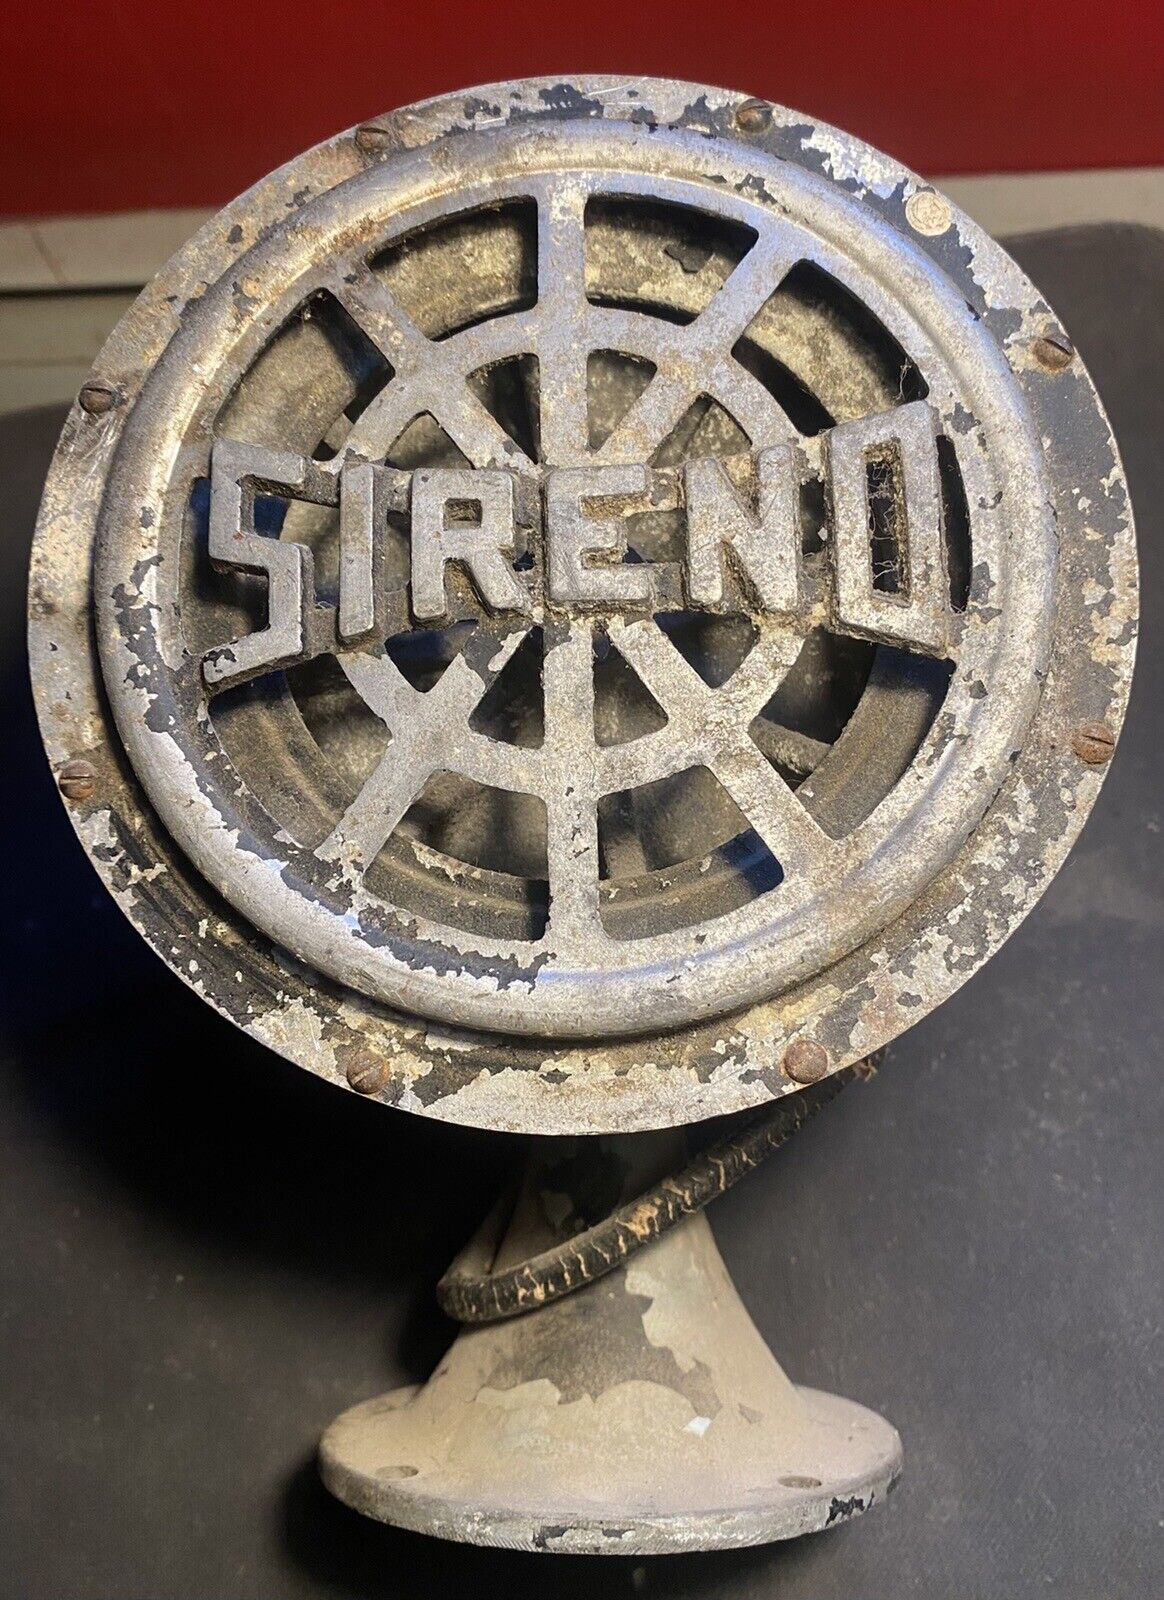 Antique Sireno Ambulance/ Firetruck Siren, Original, Rare - Untested